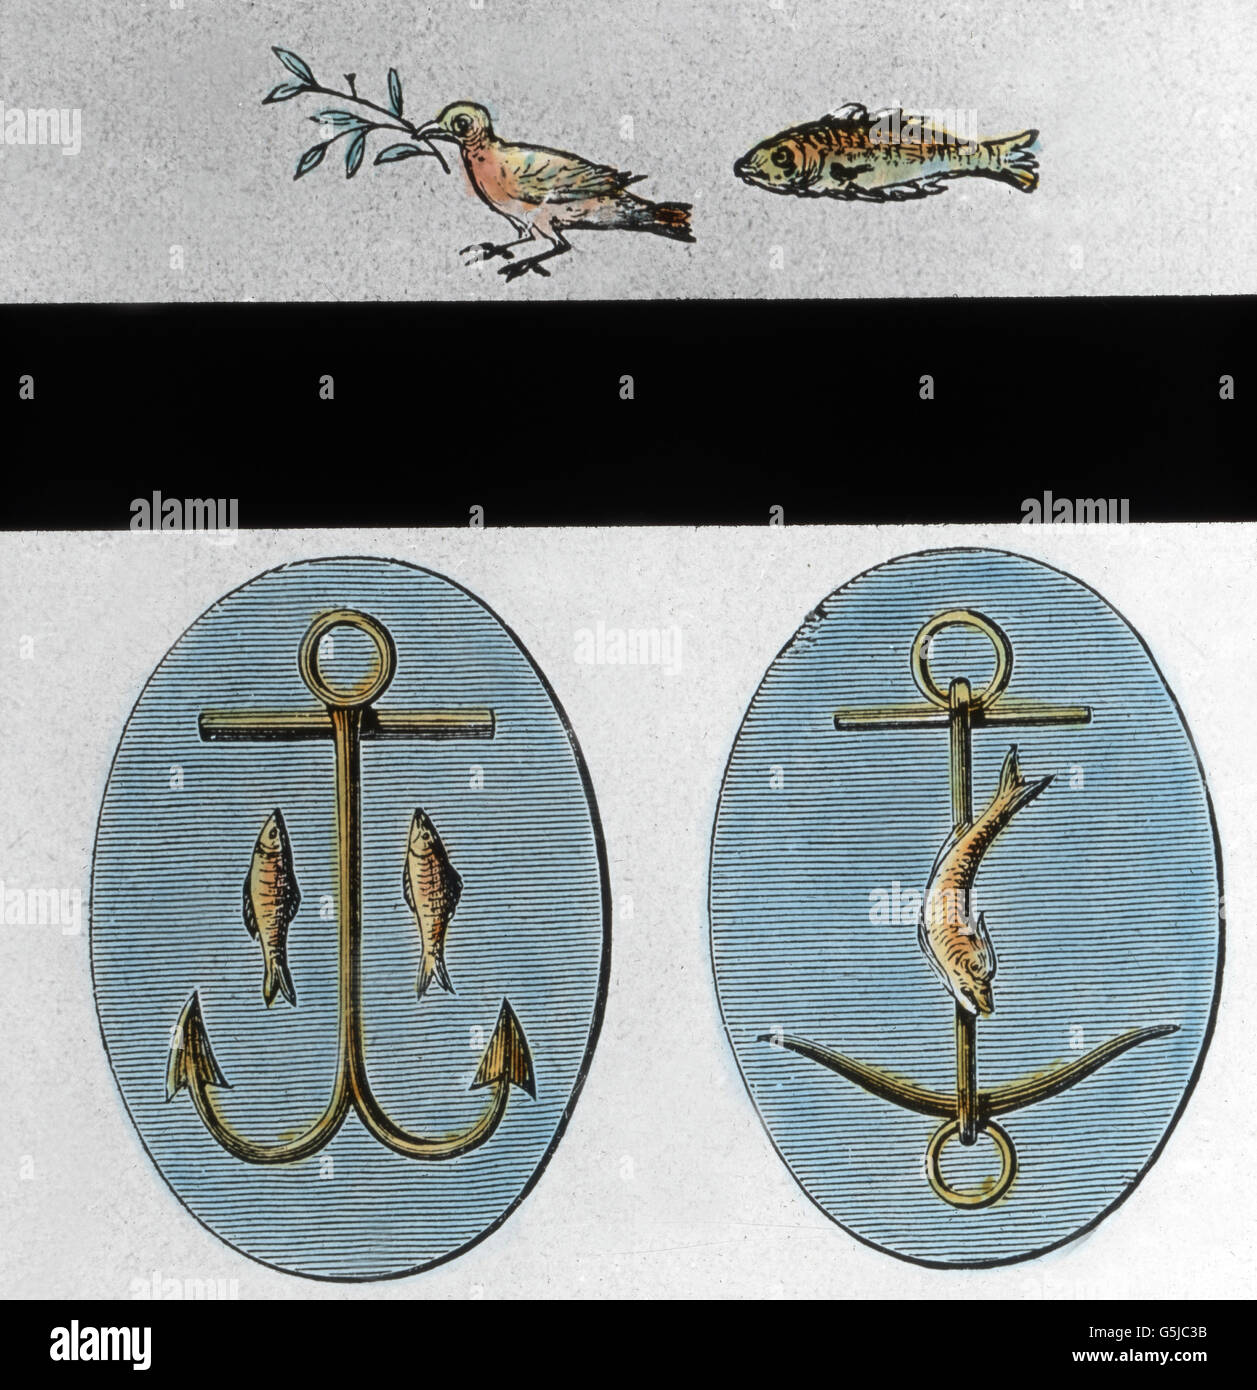 Der Fisch und der Anker als christliche Symbole. Fish and anchor as Christian symbols. Stock Photo